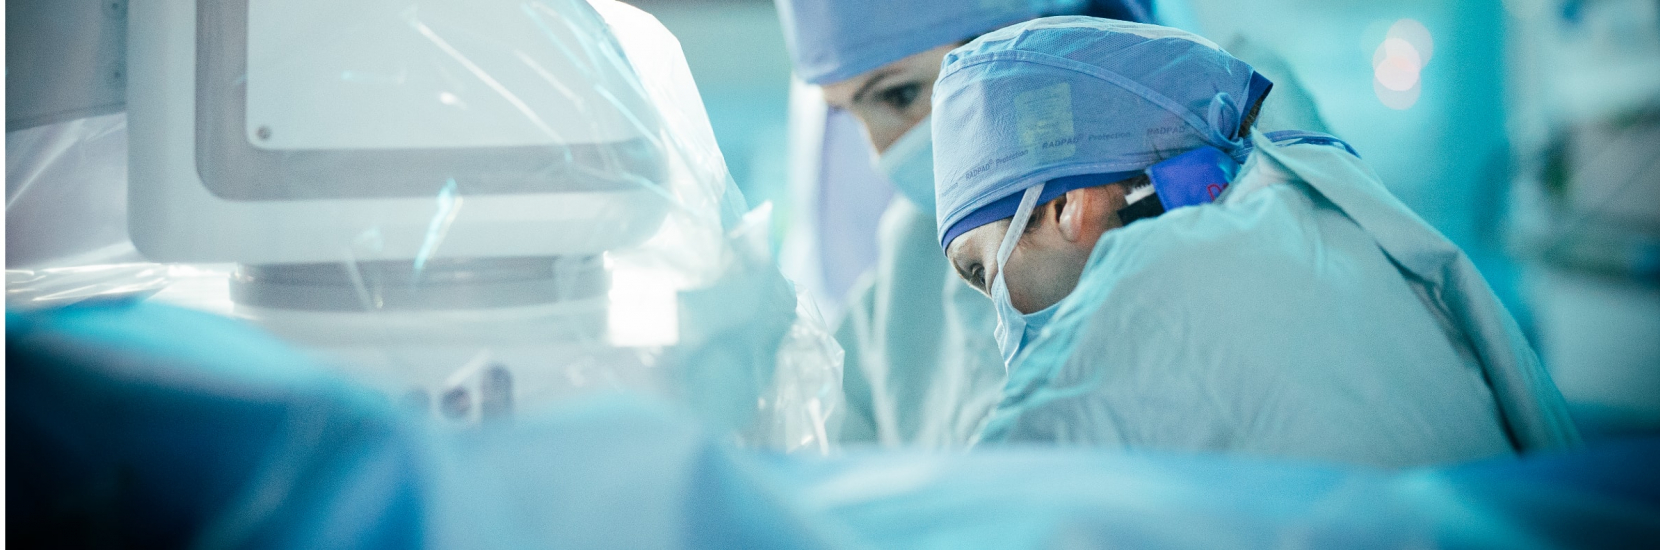 Les chirurgiens vasculaires du CHL réalisent la première fistule artério-veineuse (FAV) par voie percutanée au Luxembourg